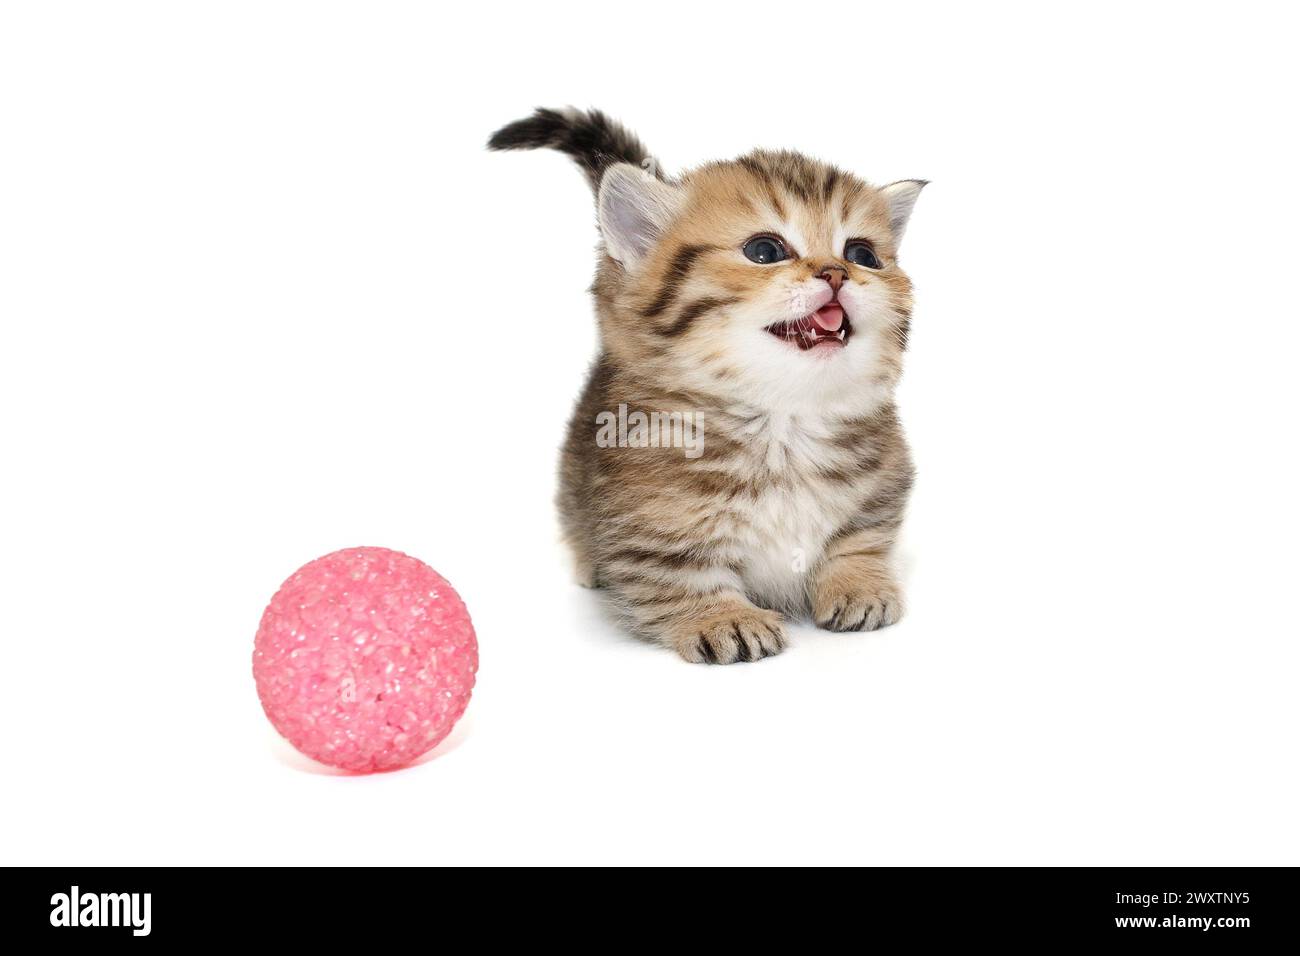 Petit chaton écossais miaule bruyamment à côté d'une boule, isolé sur un fond blanc. Banque D'Images